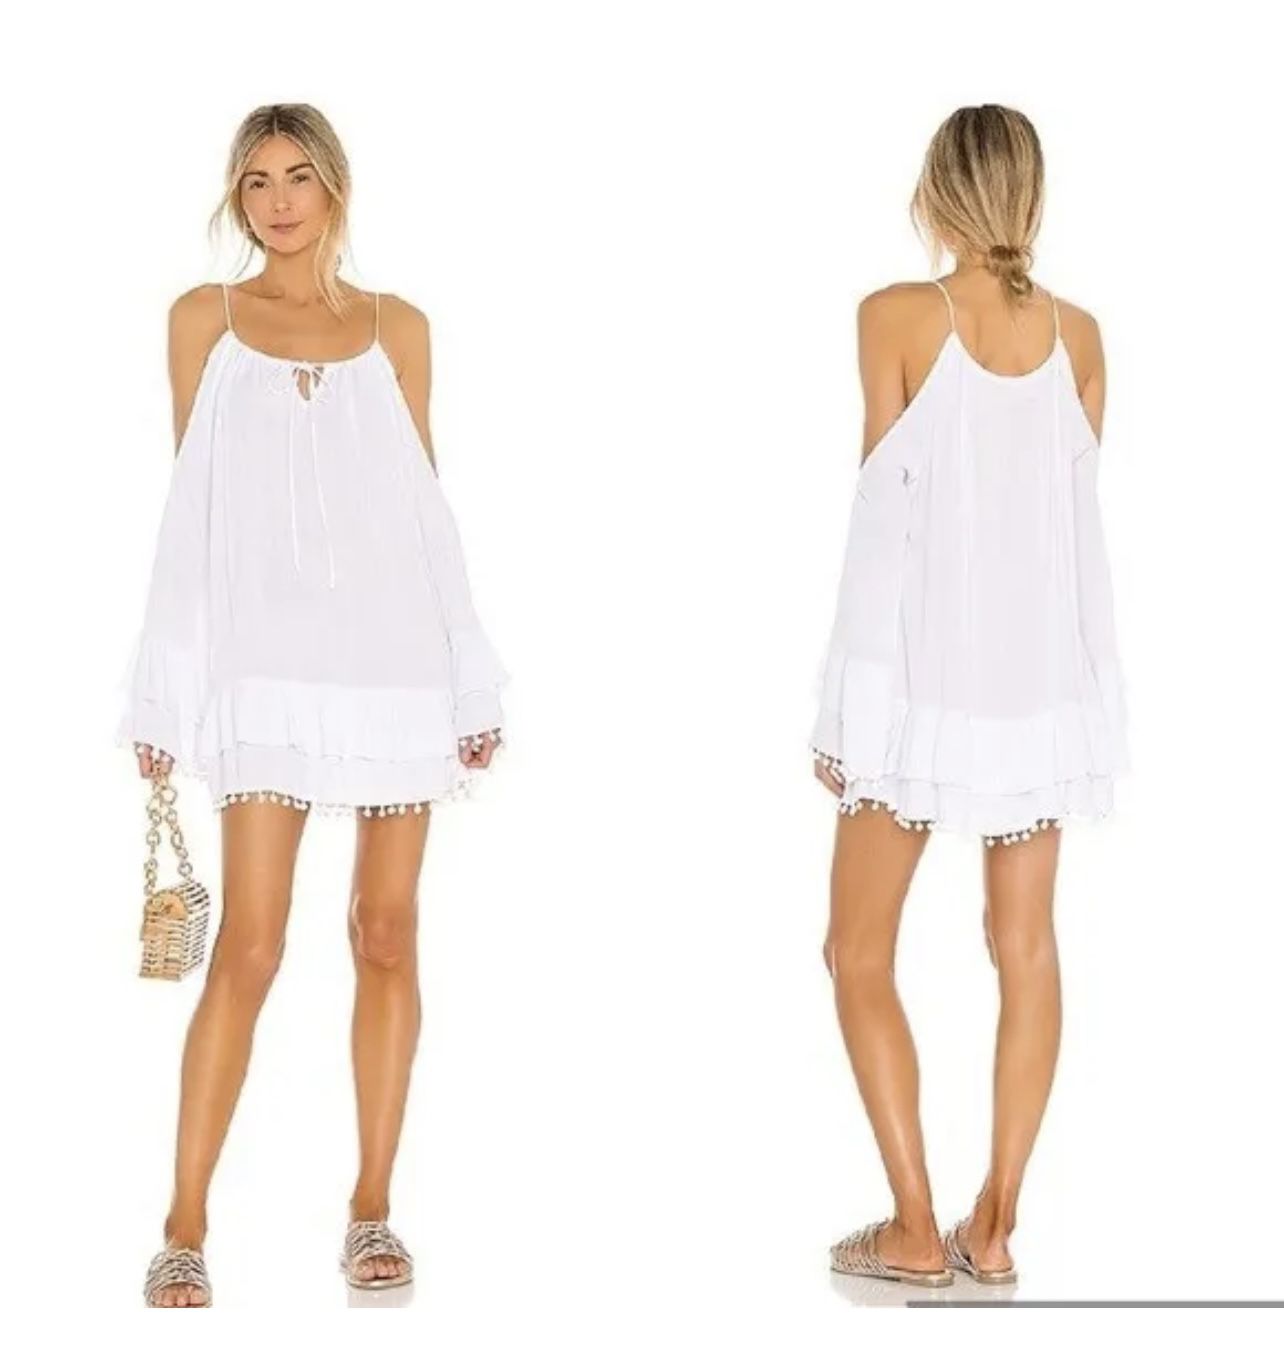 Revolve Brand Dress White Mini Dress Cold Shoulder Small